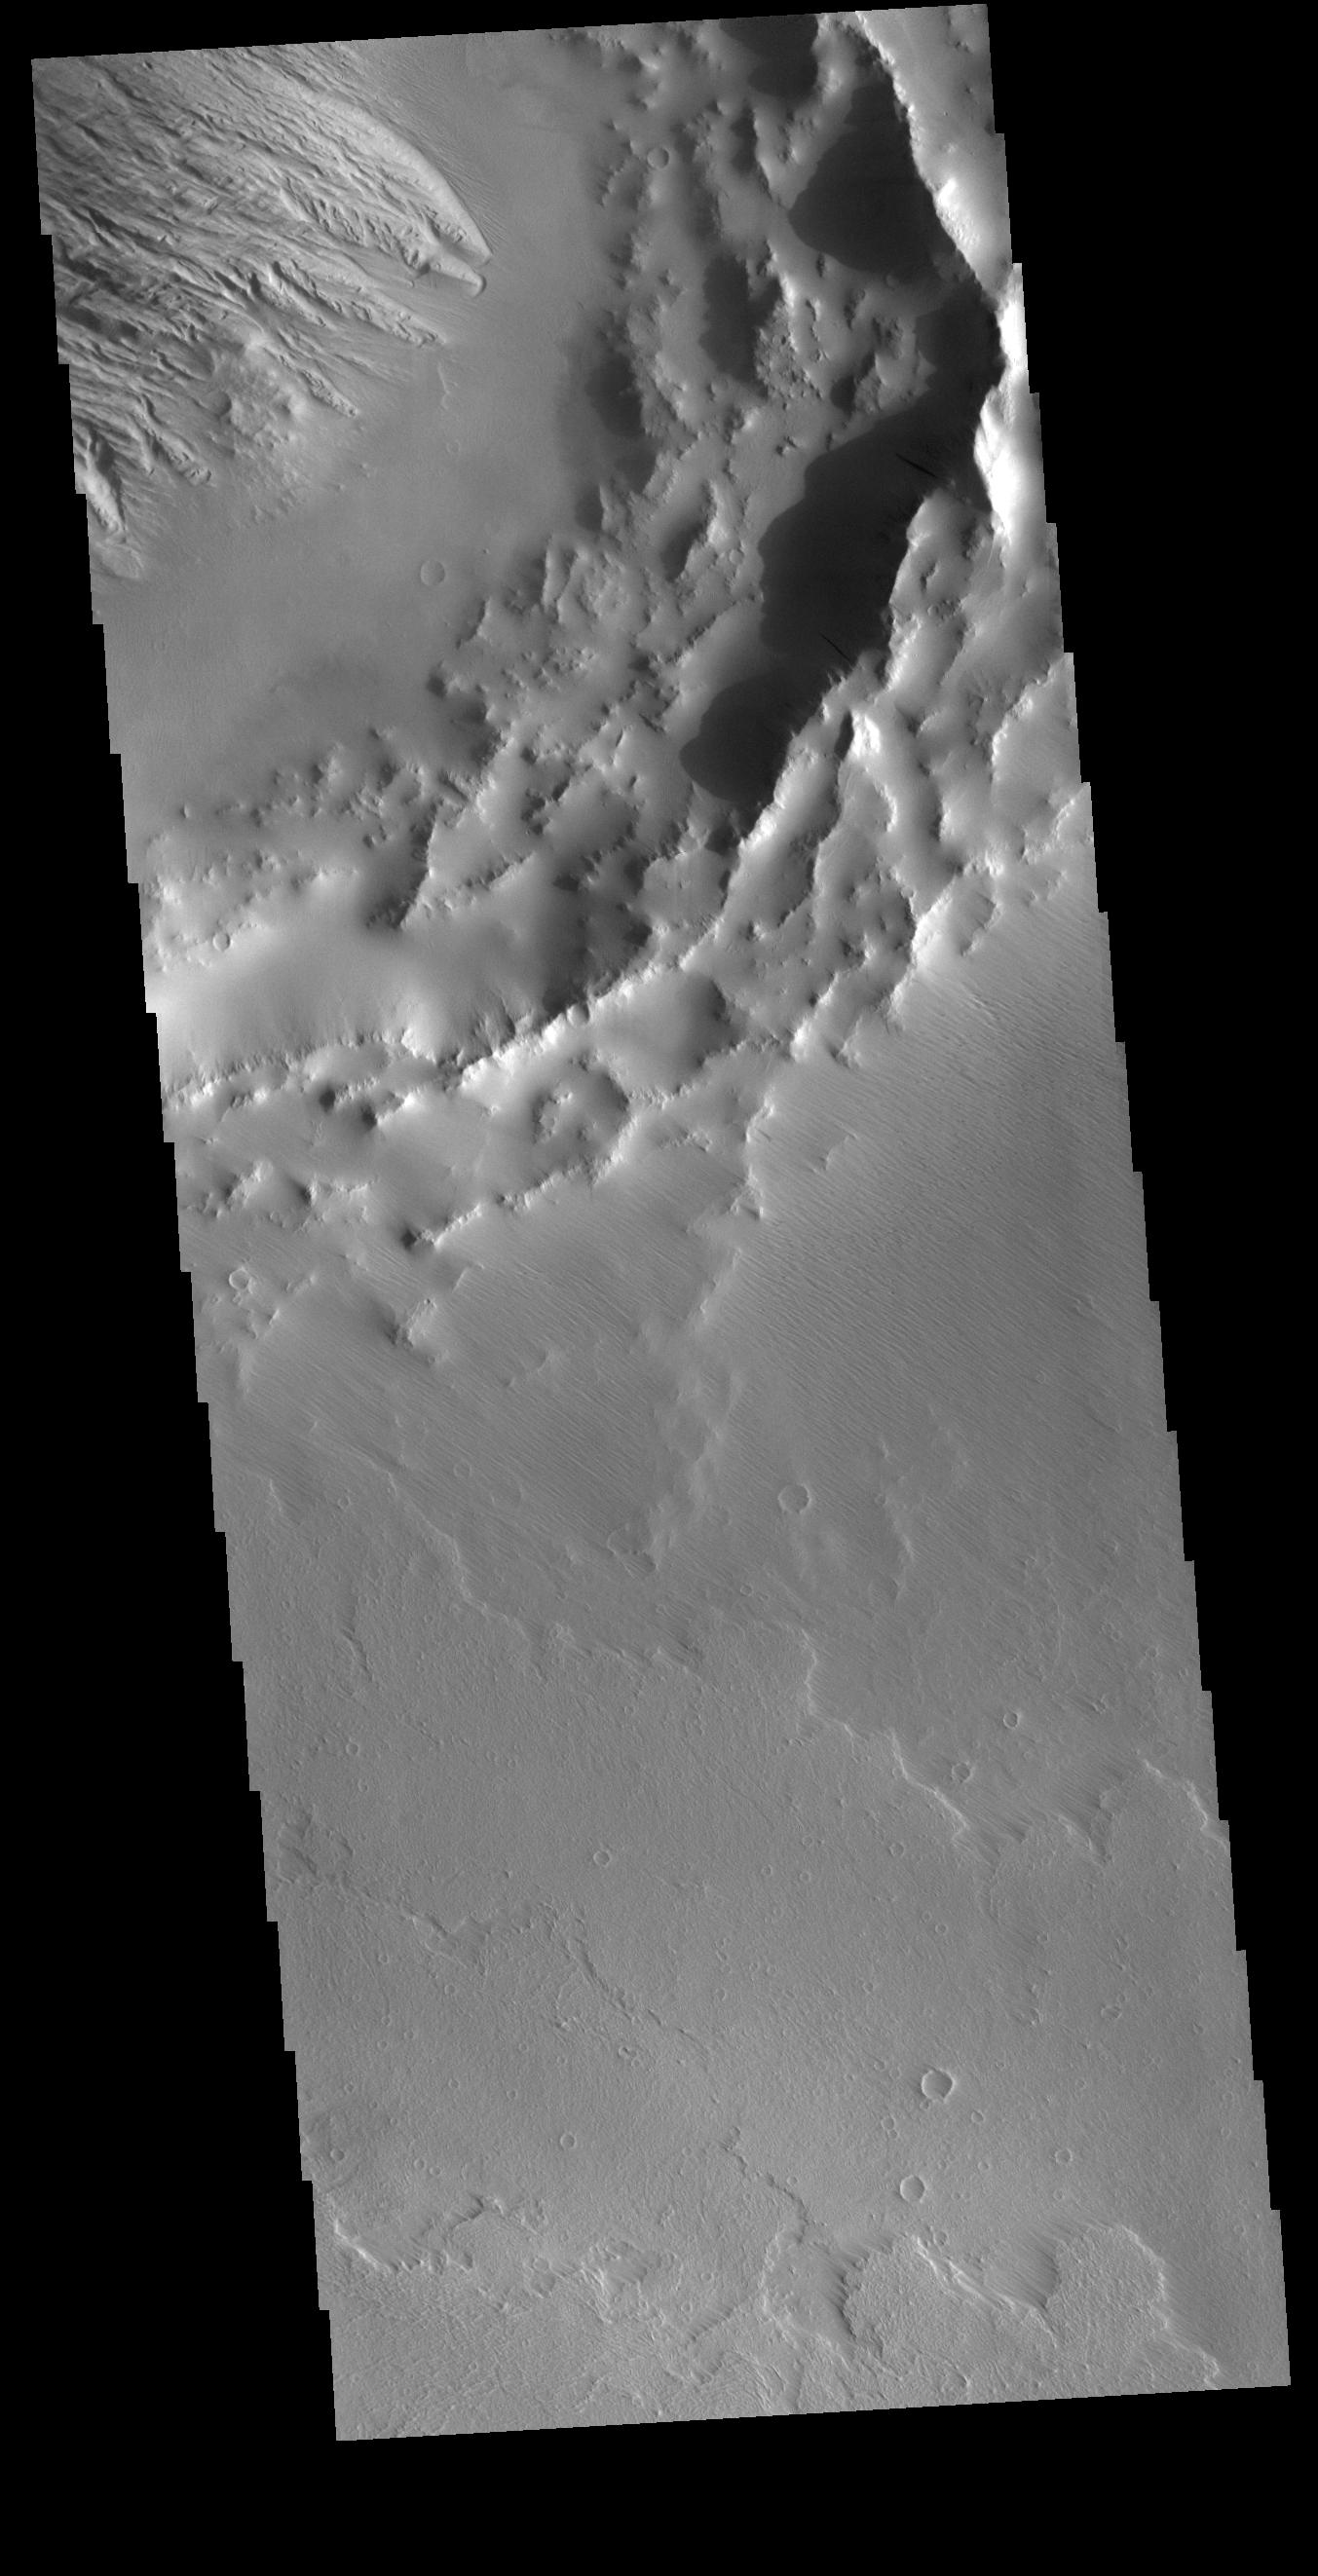 PIA22614: Daedalia Planum Crater